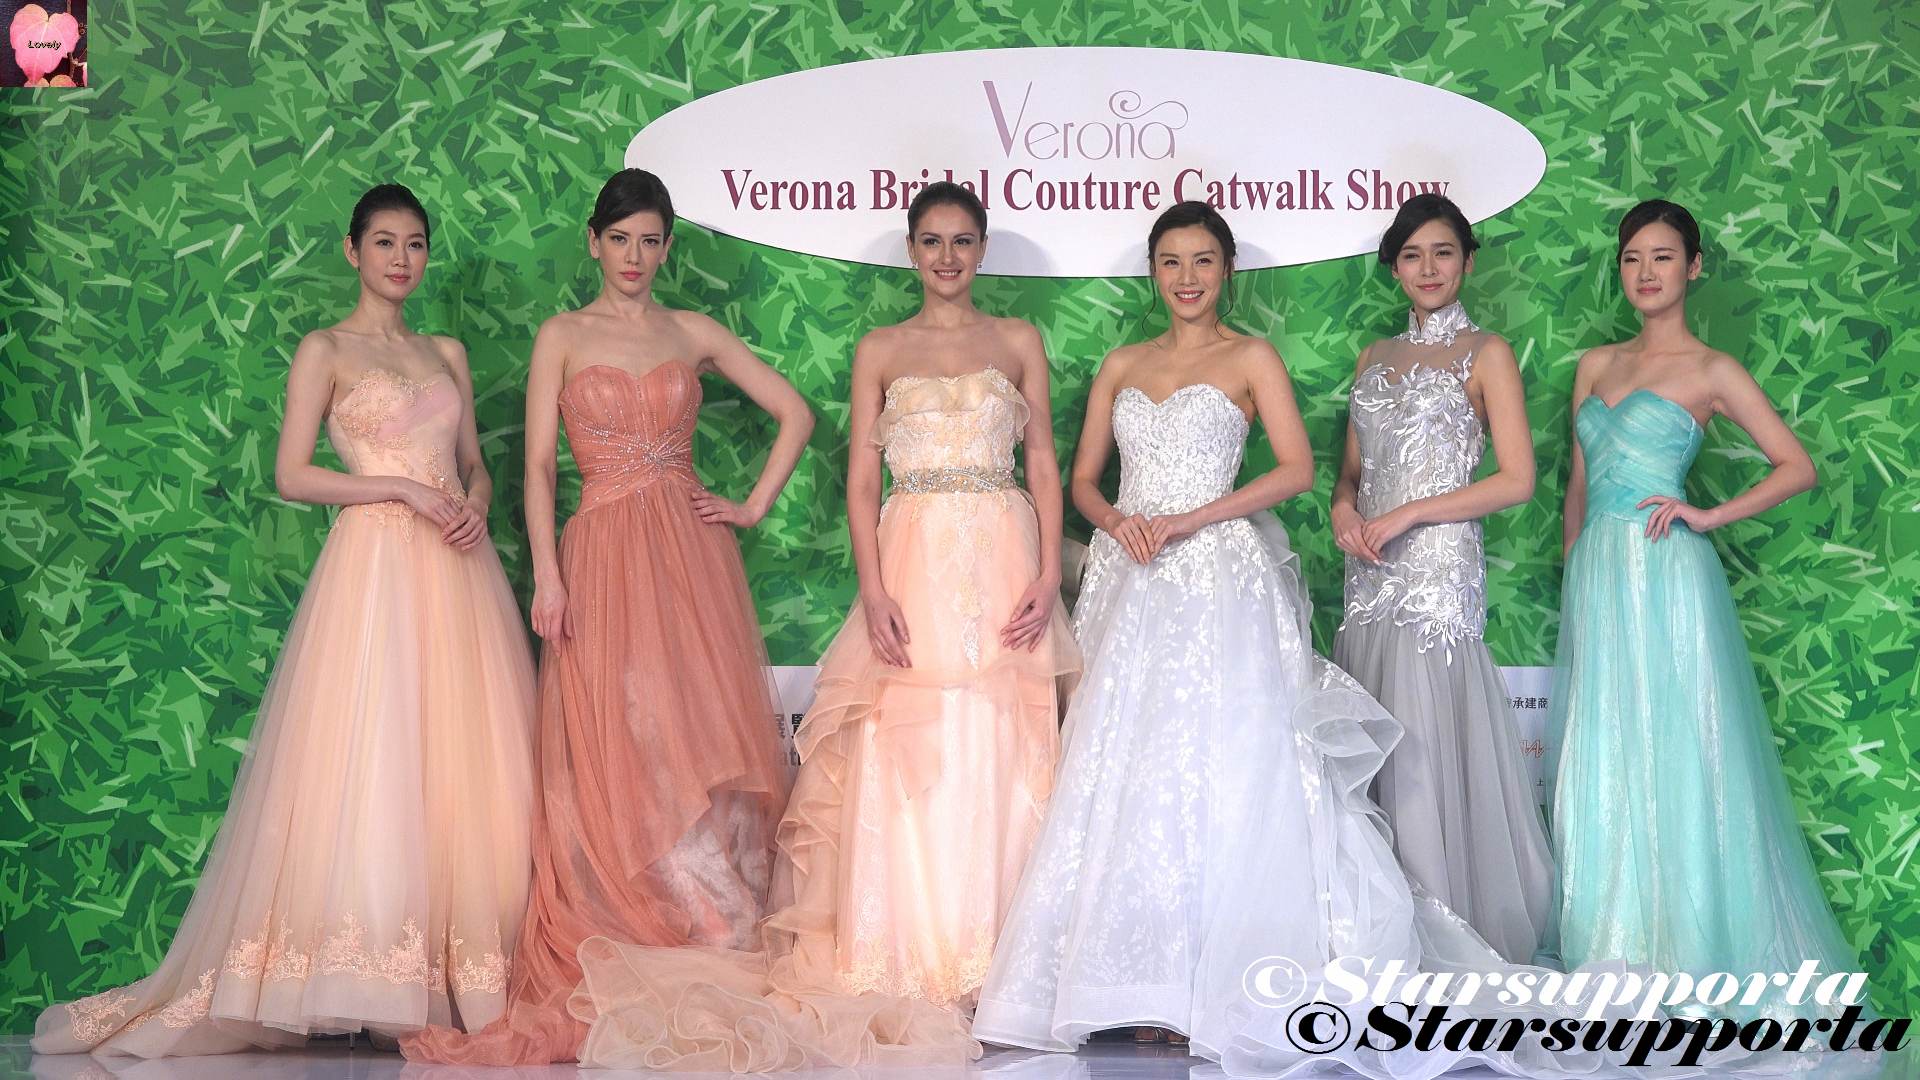 20170312 Verona Bridal Couture Catwalk Show @ Hong Kong Wedding Banquet & Wedding Decorations Expo 2017 @ HKCEC